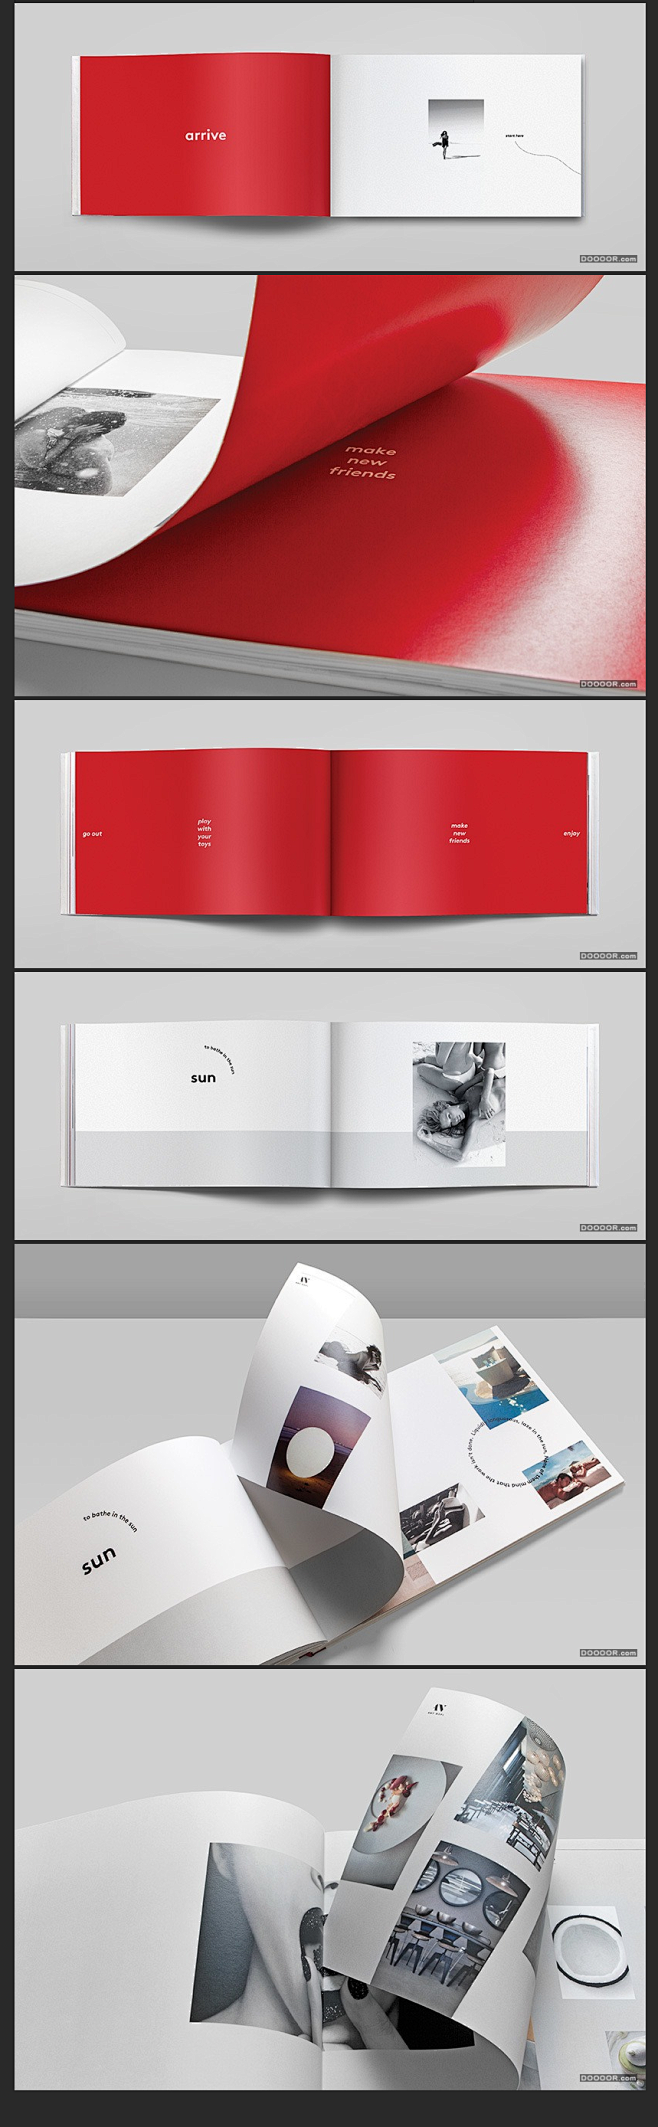 WEDGE时尚图片品牌画册设计的布局法则...